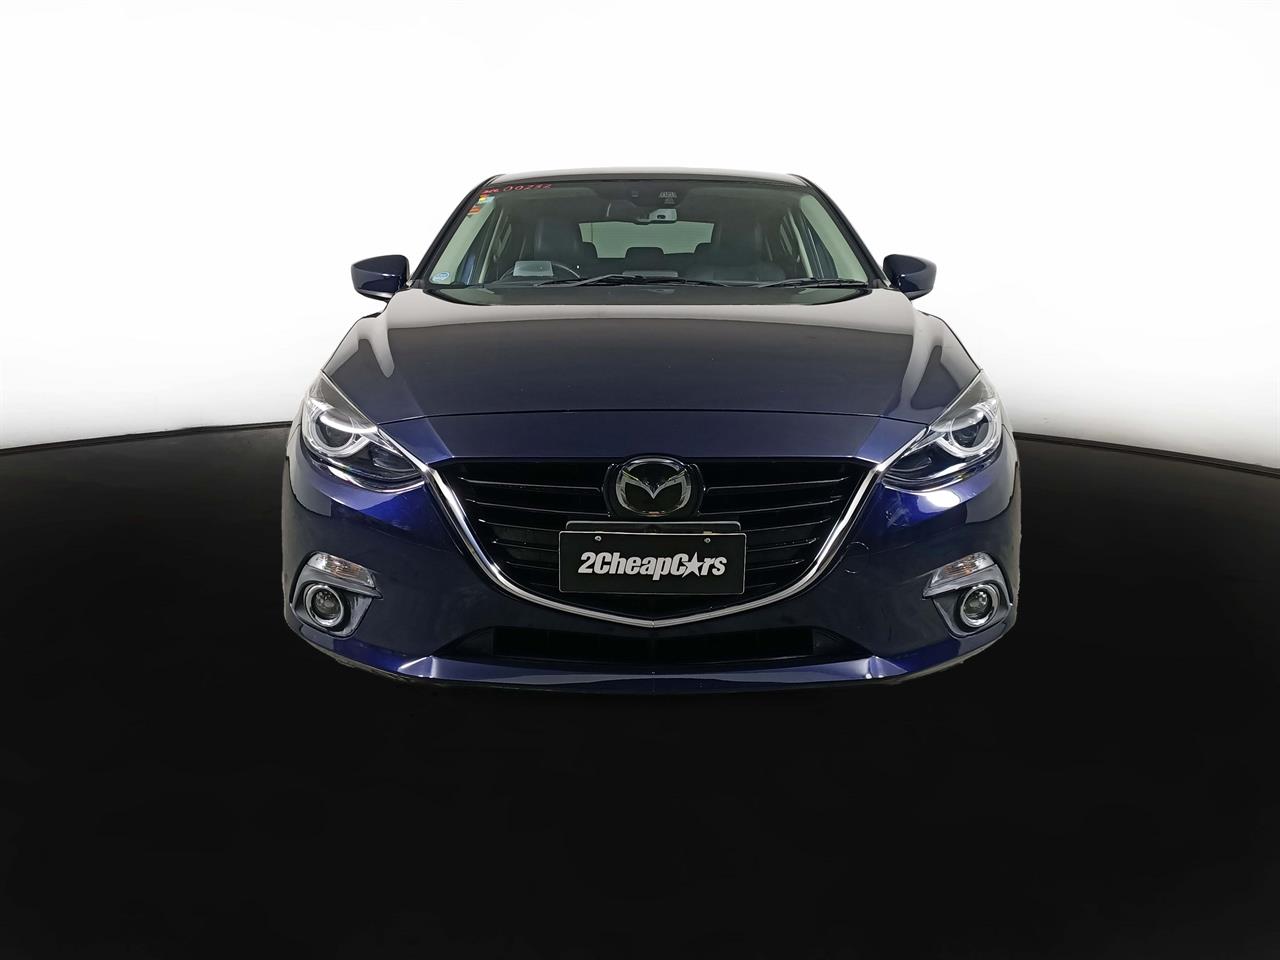 2013 Mazda Axela 3 Late Shape 2.0